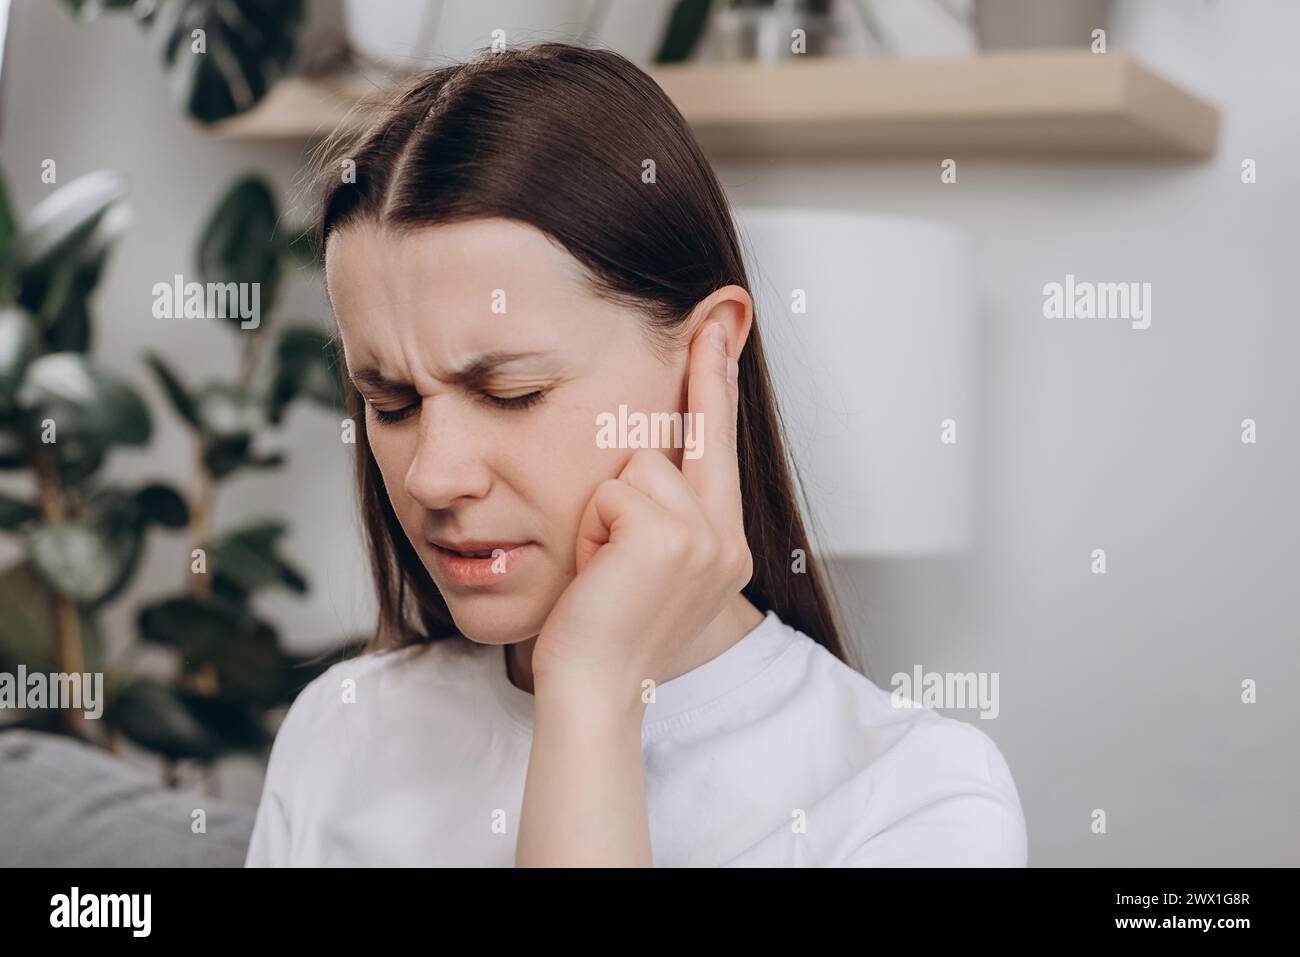 Malheureux bouleversé jeune femme caucasienne 25 ans ont des douleurs à l'oreille ou des maux d'oreille, femme triste souffrant d'otite douloureuse de bruit fort ou bruyant, inflammation. Santé c Banque D'Images